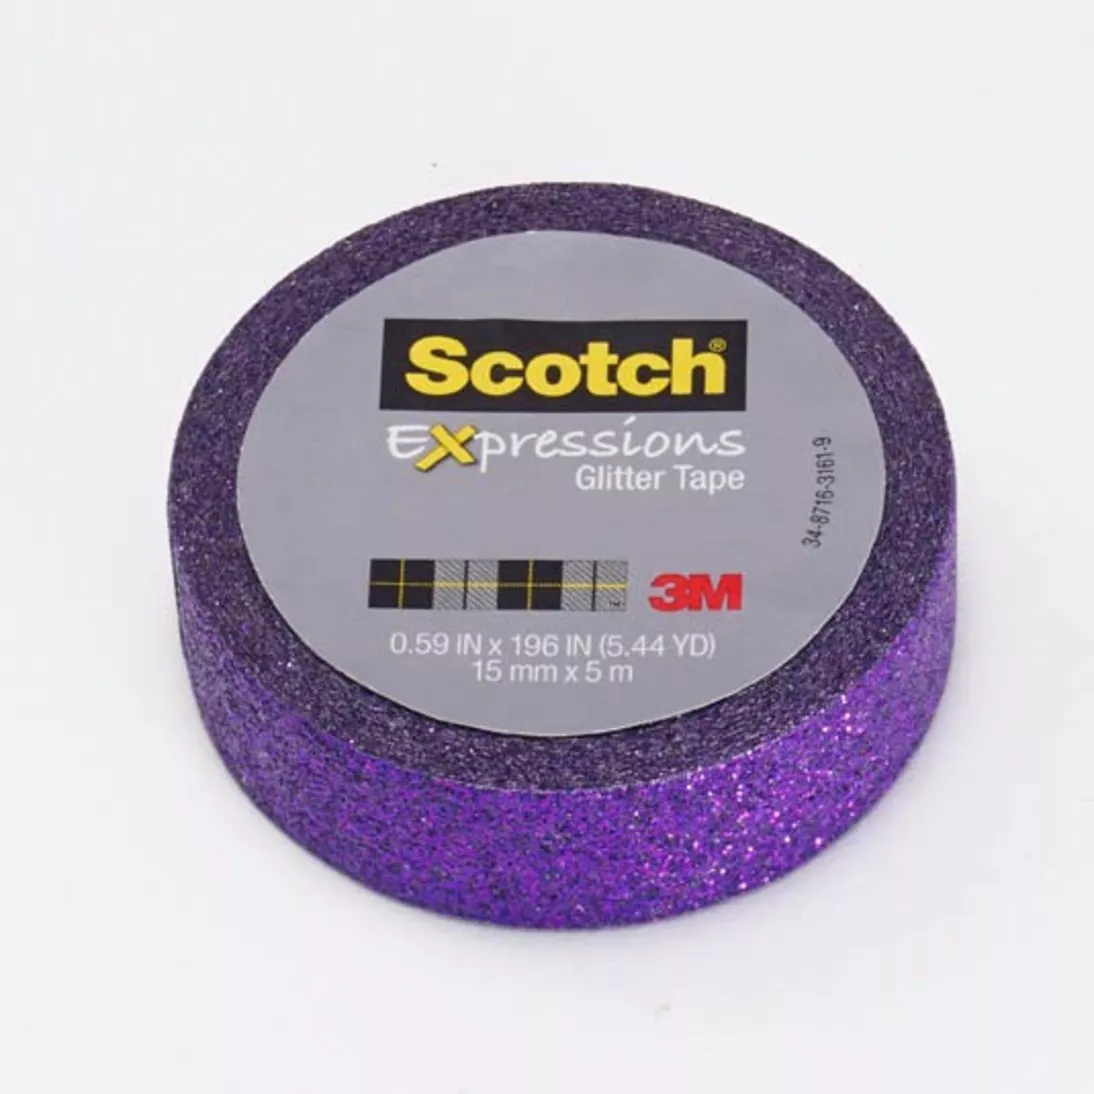 Scotch® Expressions Glitter Tape C514-PUR, .59 in x 196 in (15 mm x 5 m)
Bright Violet Glitter